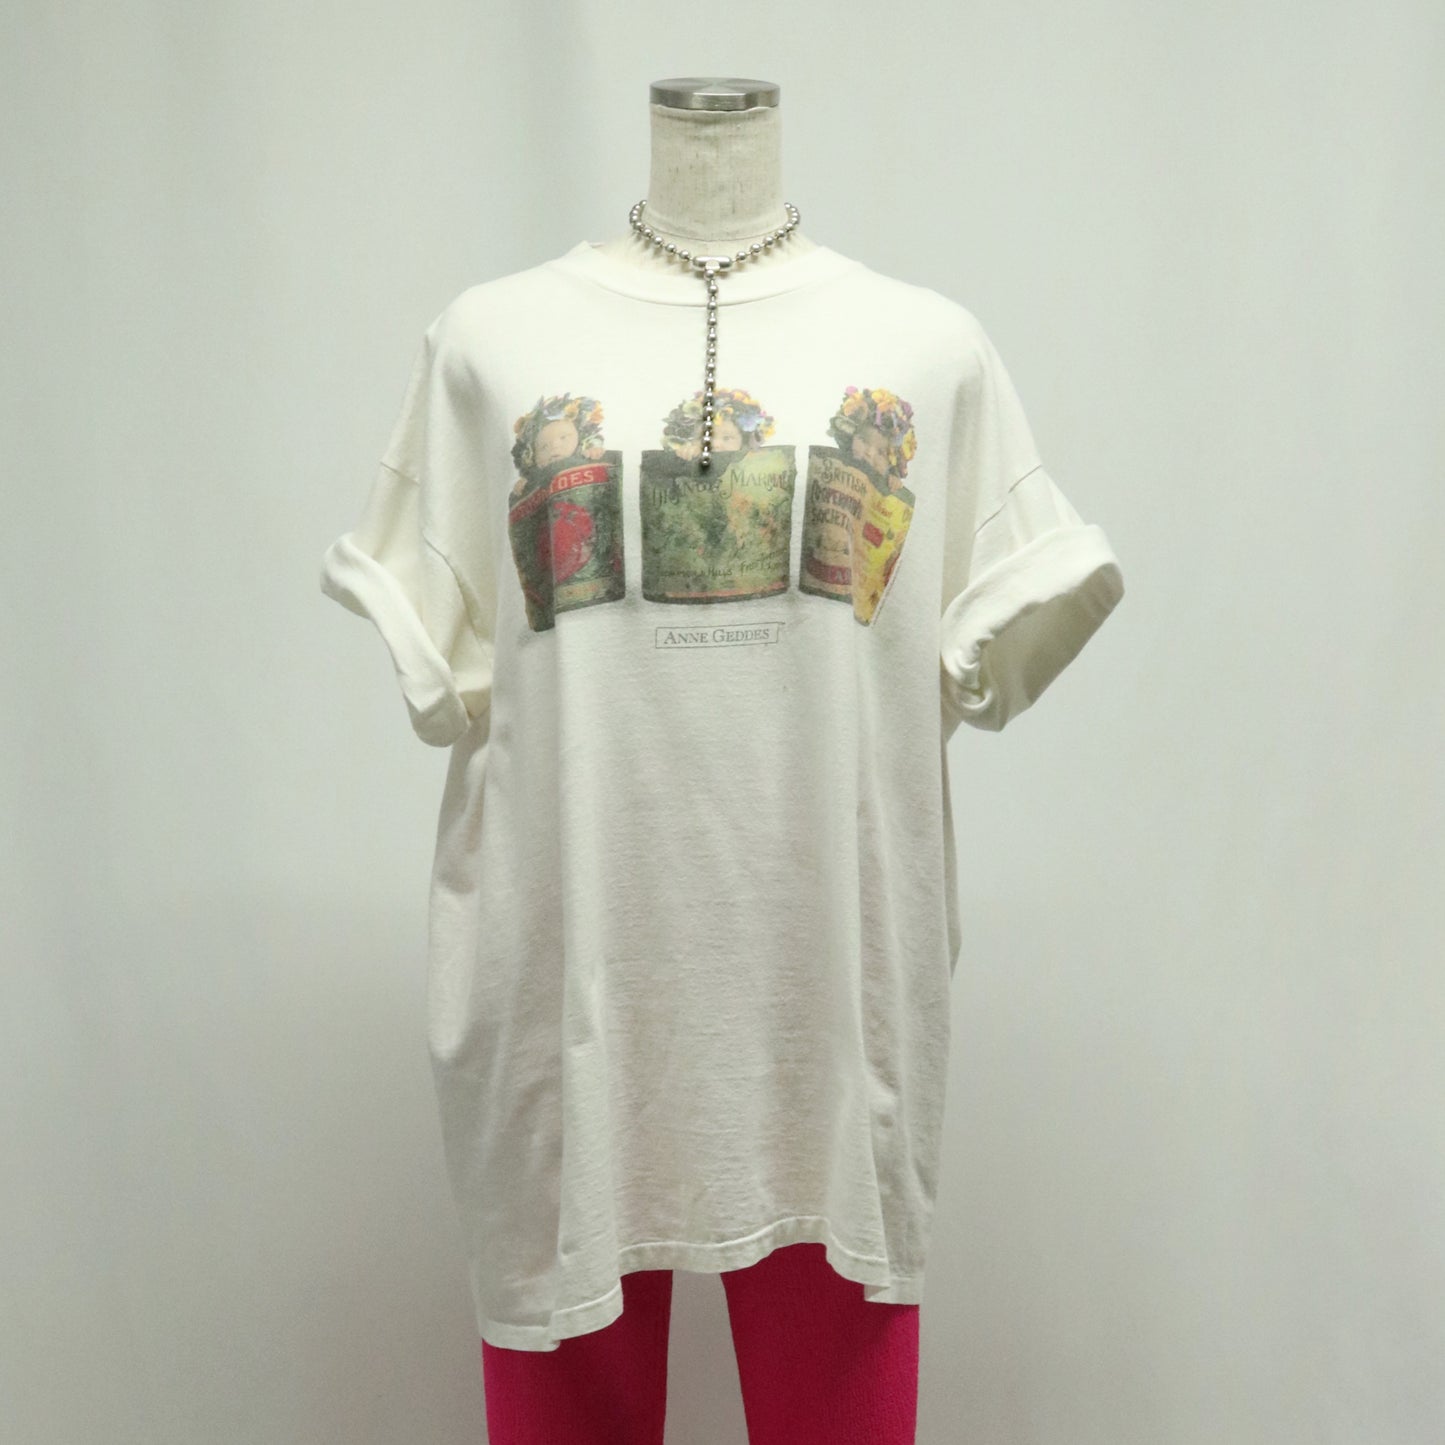 90's "ANNE GEDDES" photo t-shirt